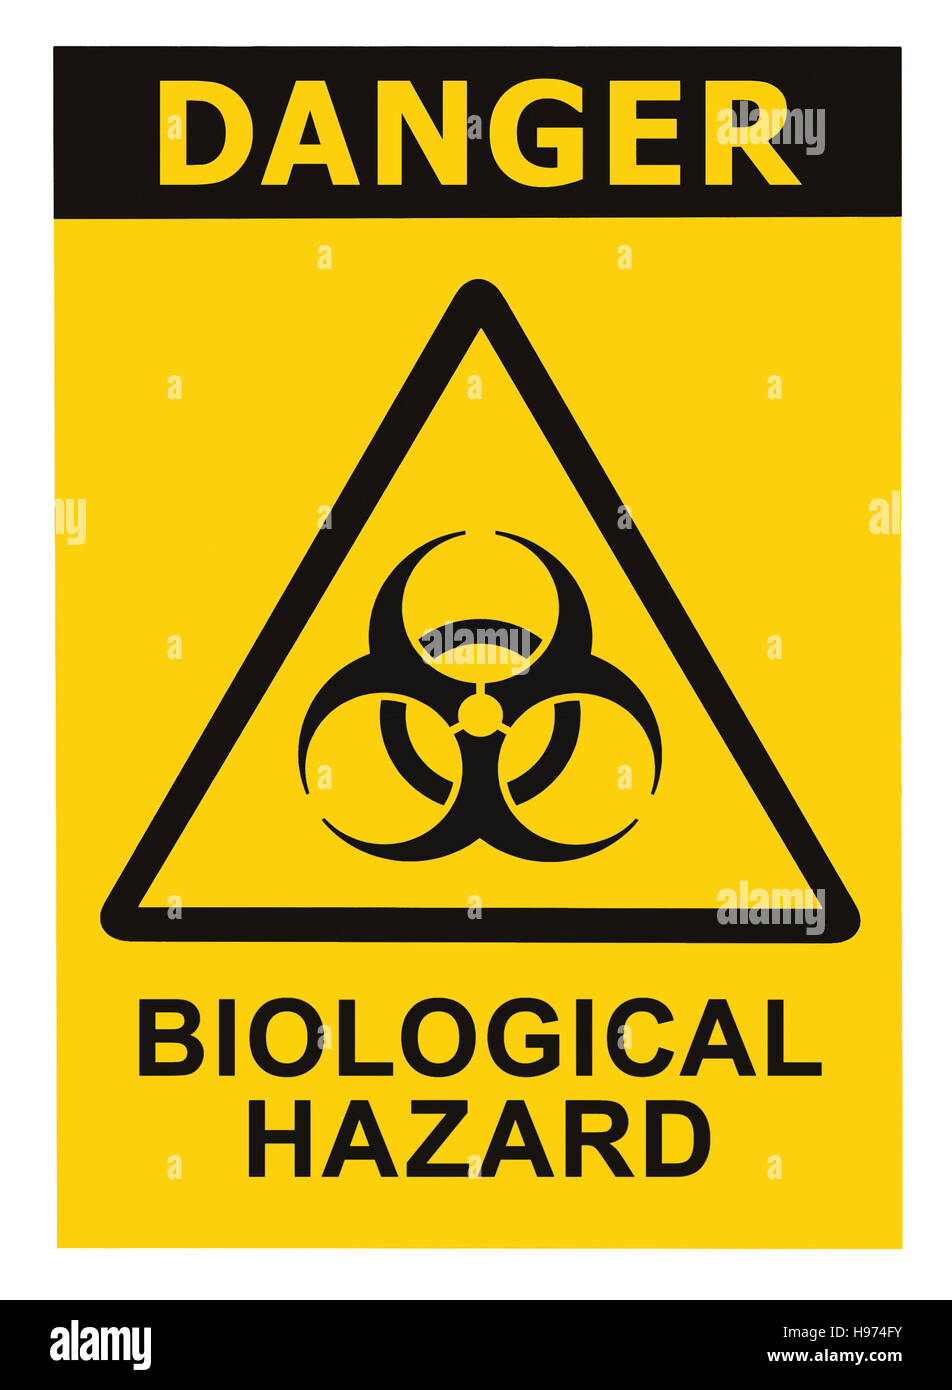 Biohazard símbolo de alerta de amenaza biológica, negro triángulo amarillo carteles aislados de texto Foto de stock